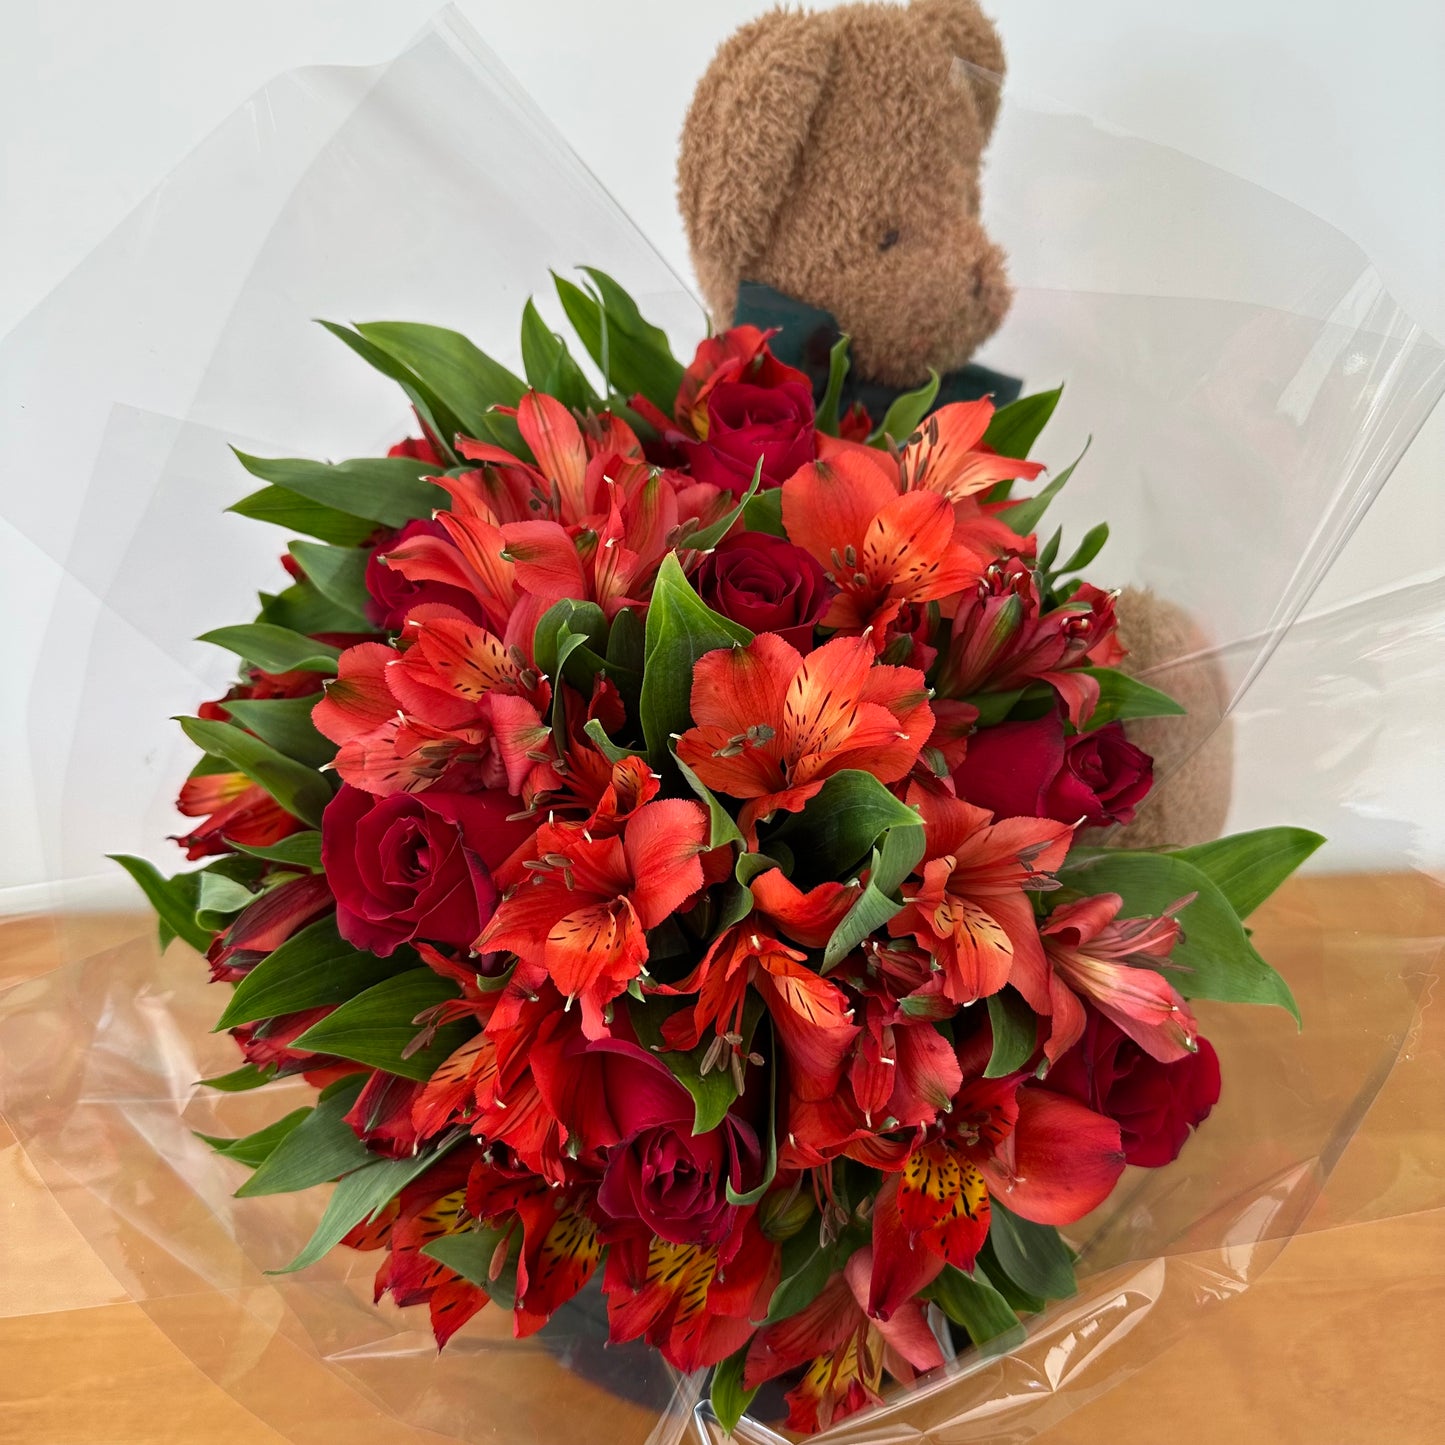 Bouquet na box com urso de pelúcia